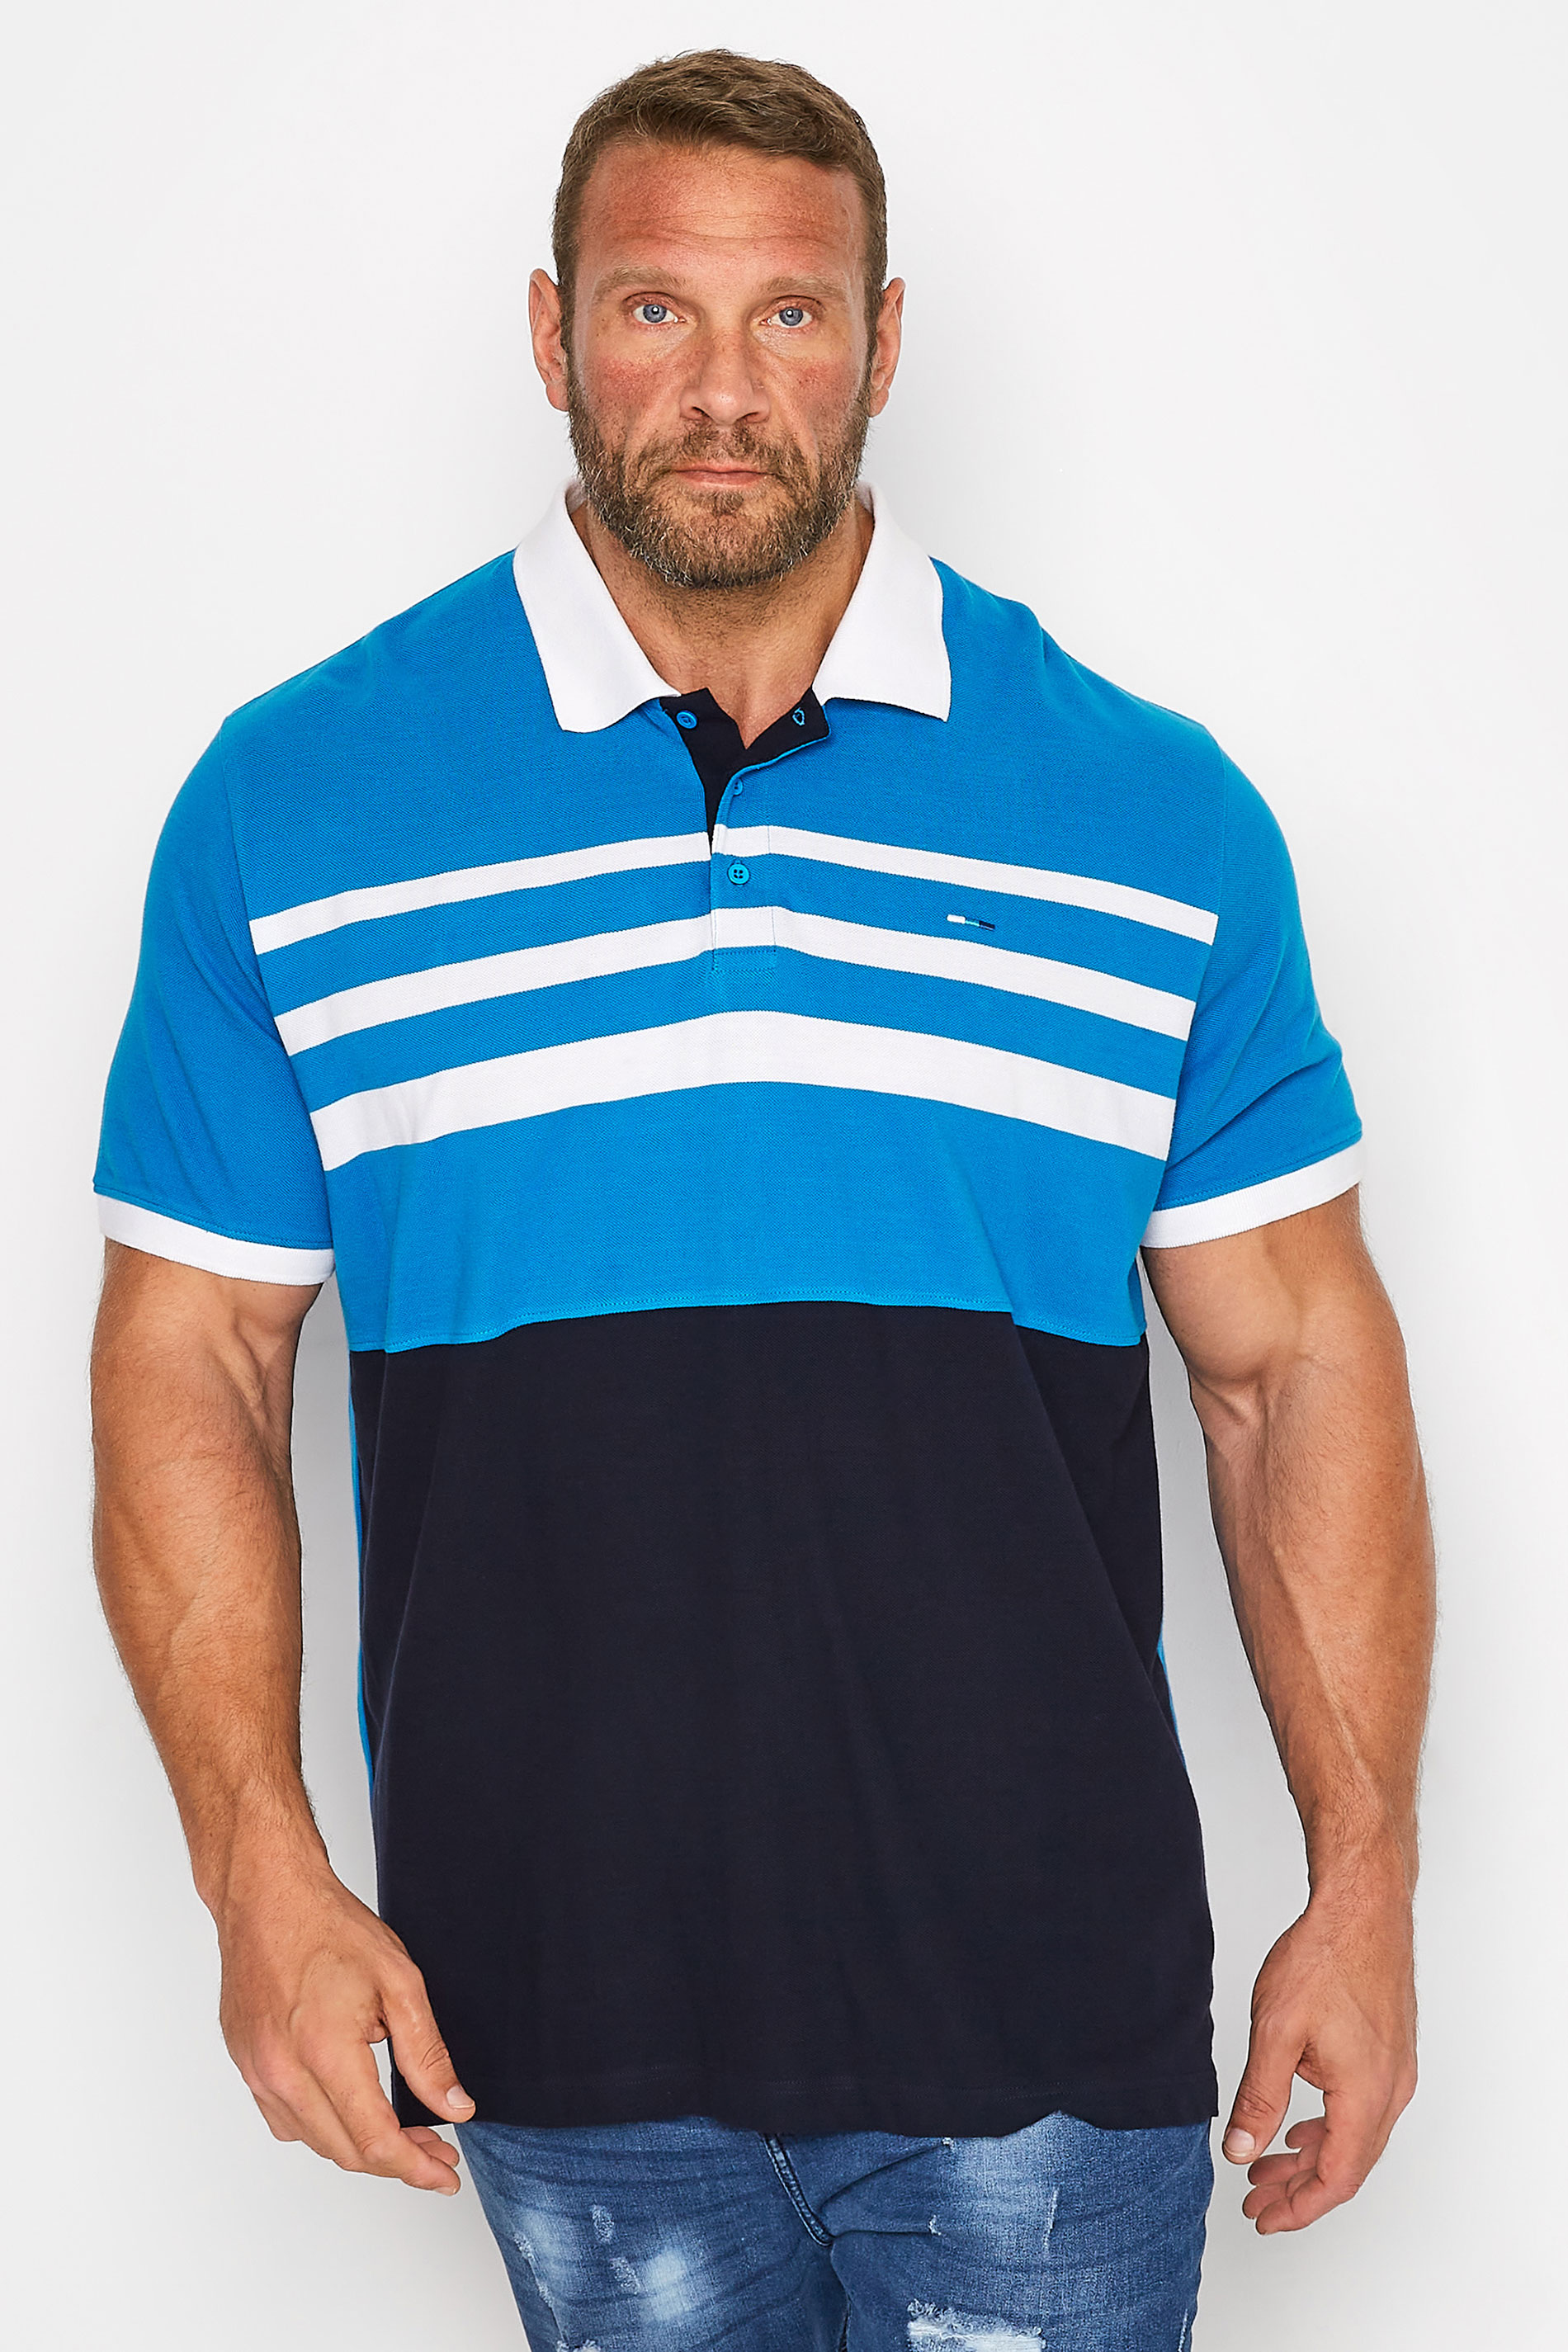 BadRhino Big & Tall Blue & Black Contrast Stripe Polo Shirt | BadRhino 1